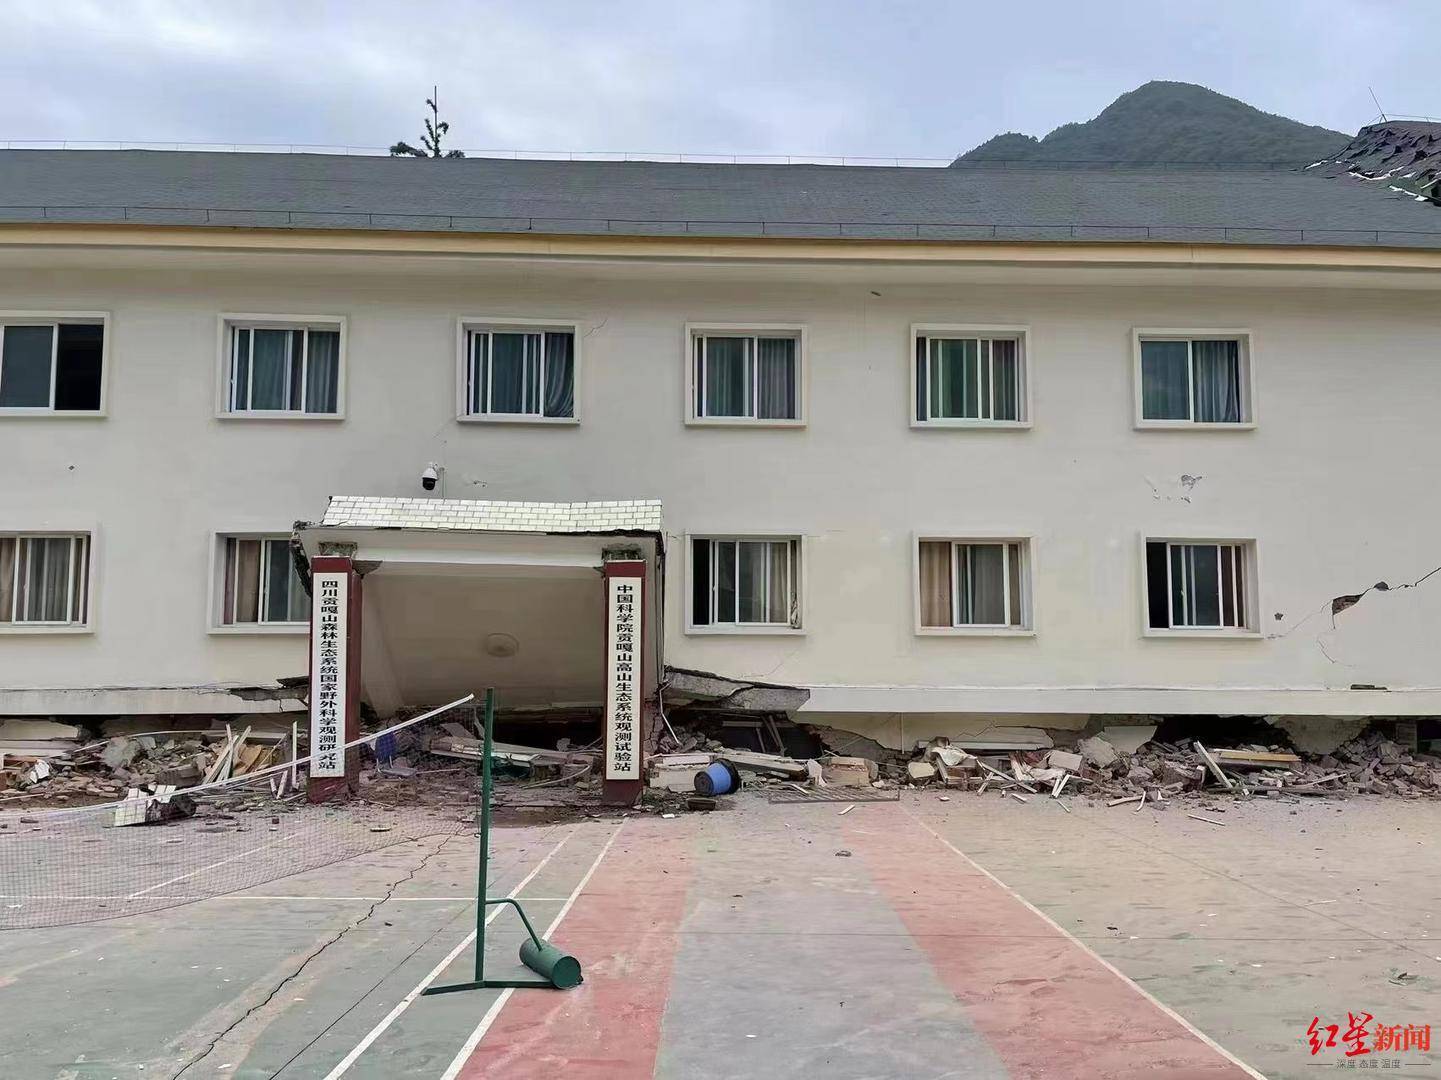 “山地”中科院贡嘎山试验站地震中受损：一名女研究生不幸遇难，家属正前往善后